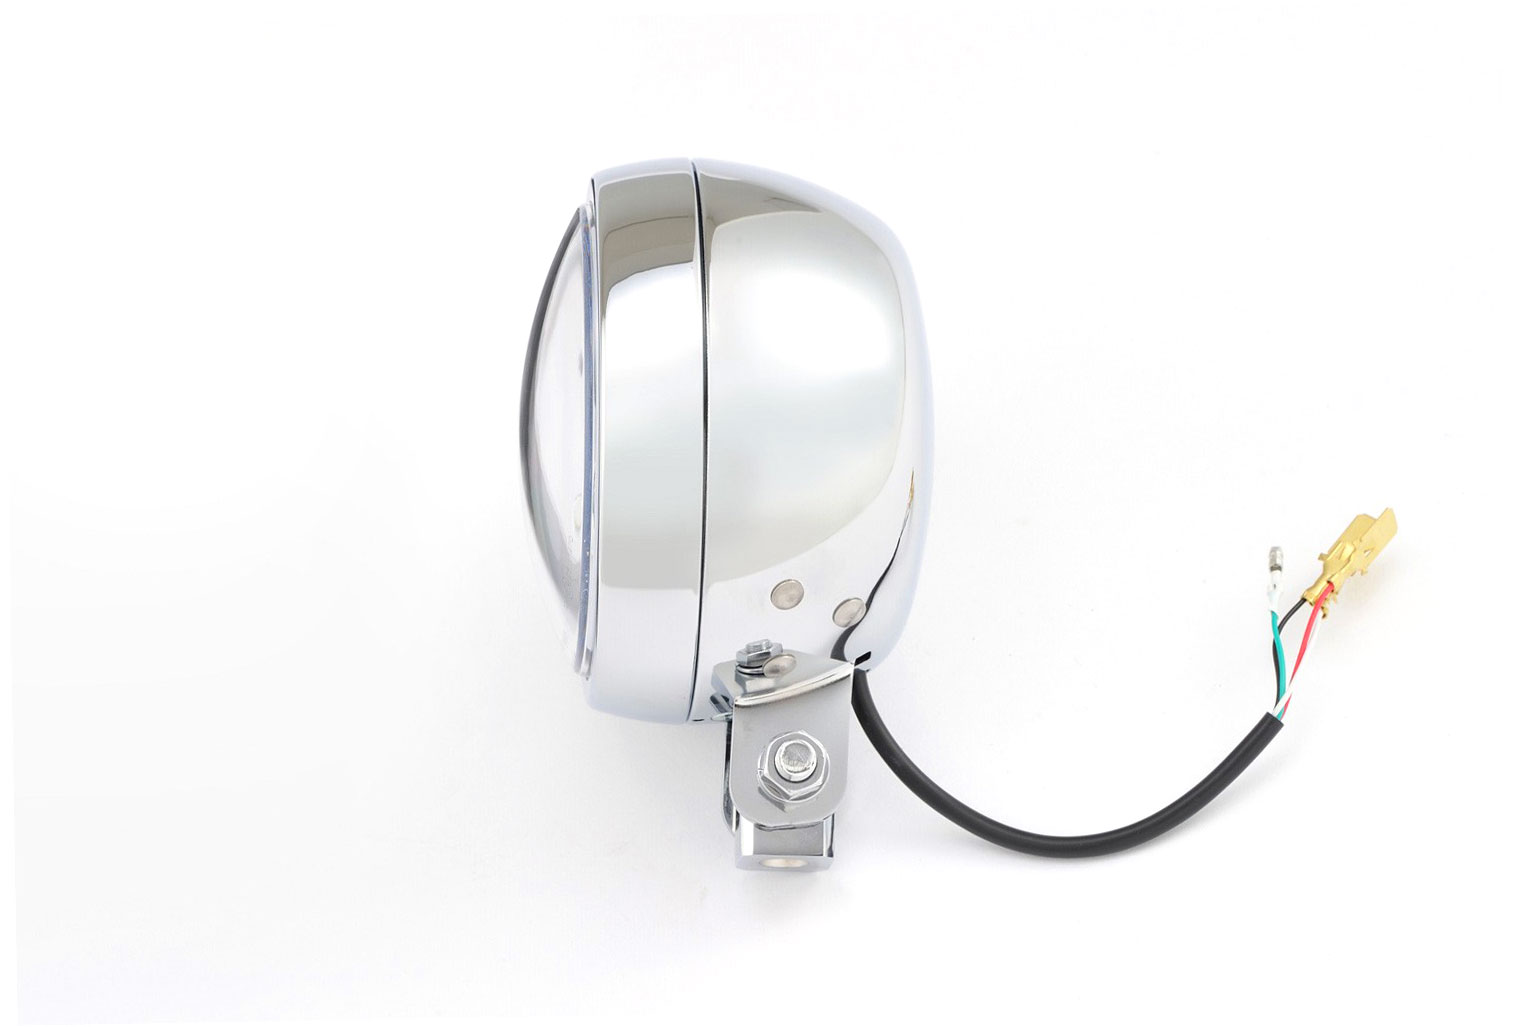 LED Motorradscheinwerfer chrom mit nur 120 mm Durchmesser und rundem  Tagfahrlicht, Befestigung unten